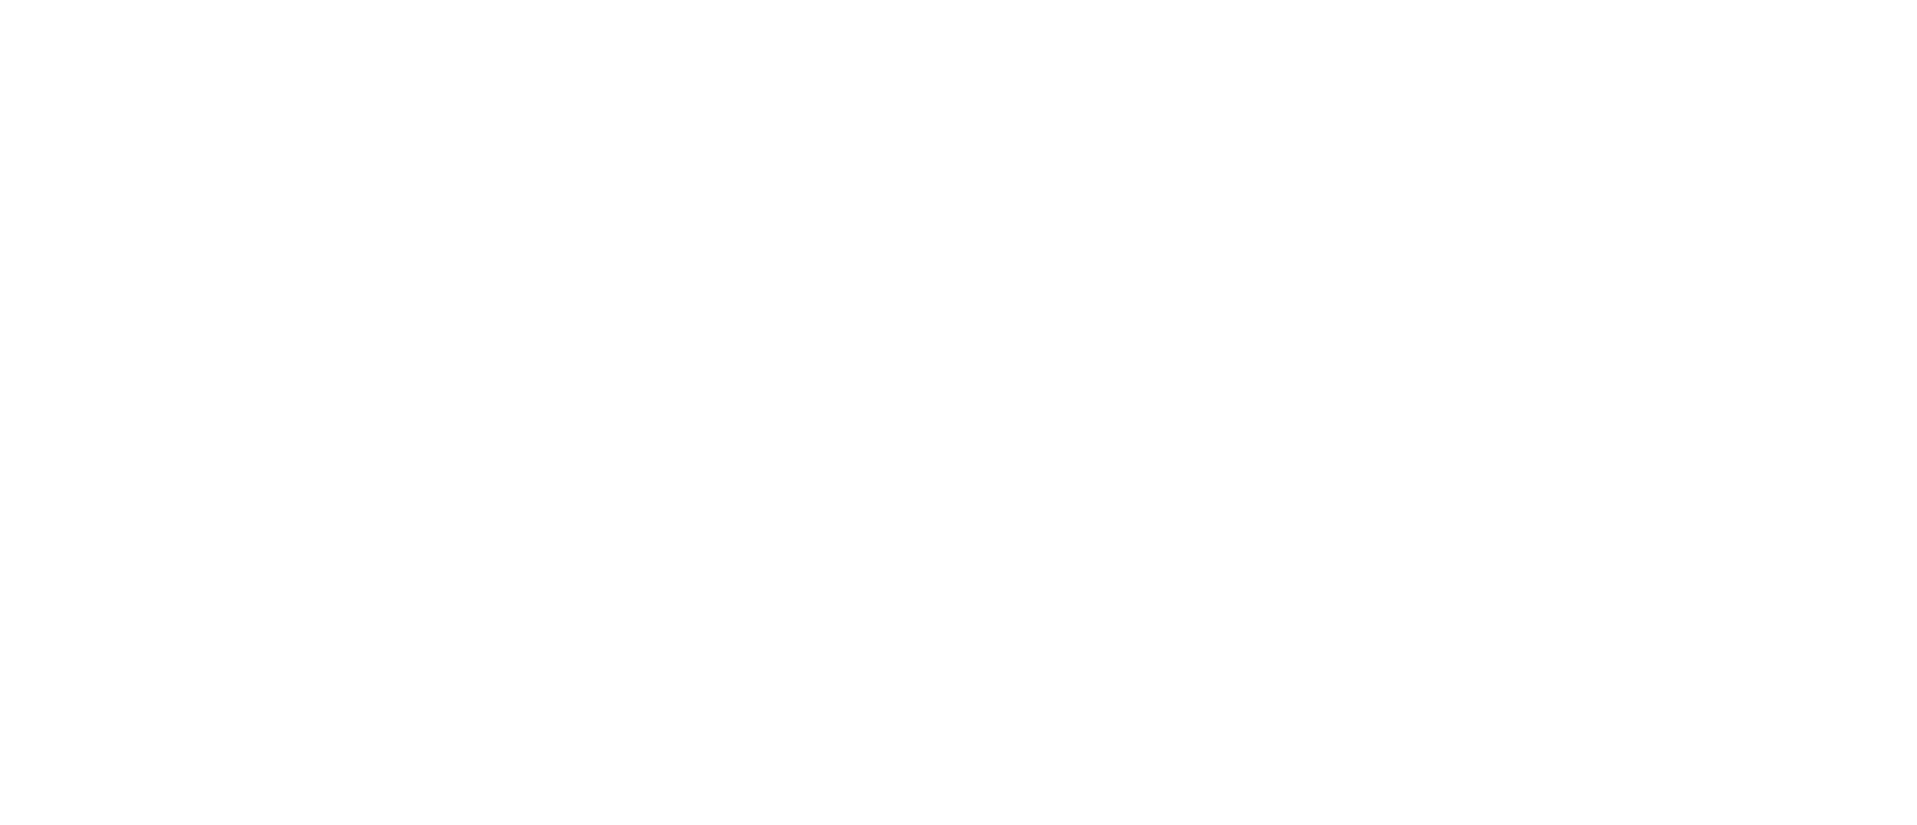 nesje-logo-1935-mahogny-rgb